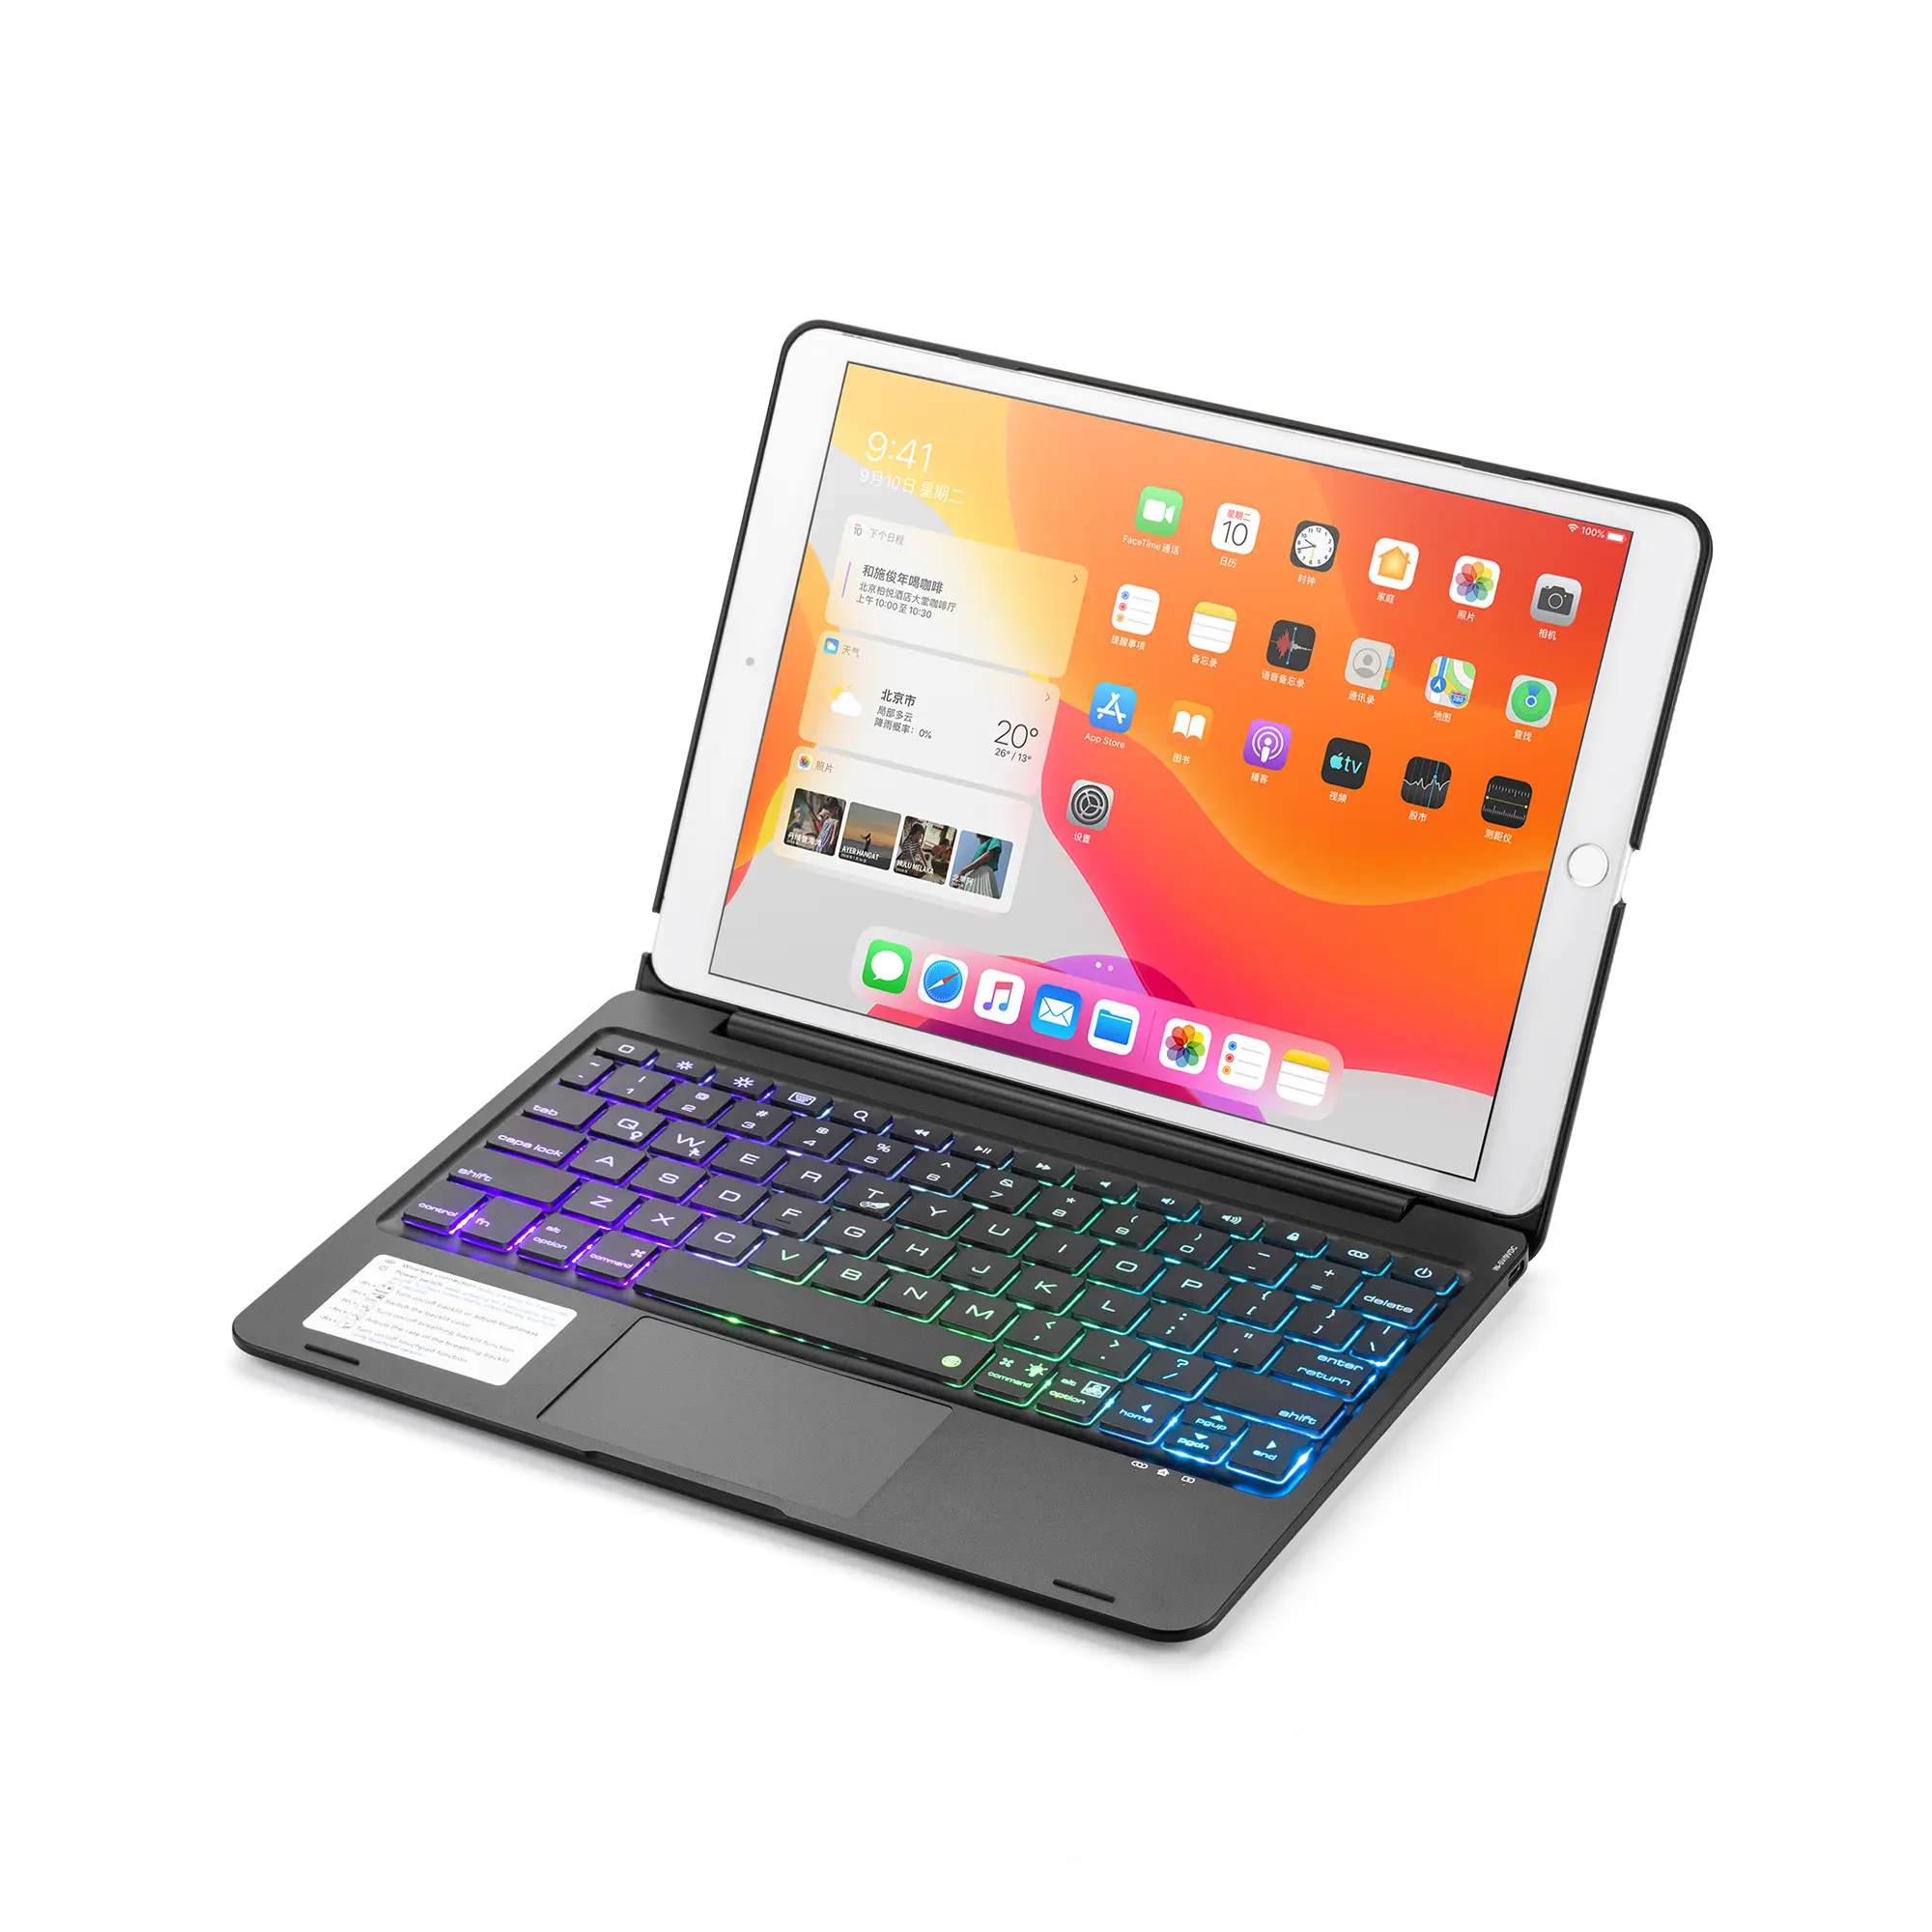 De Wireless Keyboard Case Is Geschikt Voor Ipad9 10 2 Tablet Producten Ondersteuning Zeven Kleuren Achtergrondverlichting En Touch Mouse functie